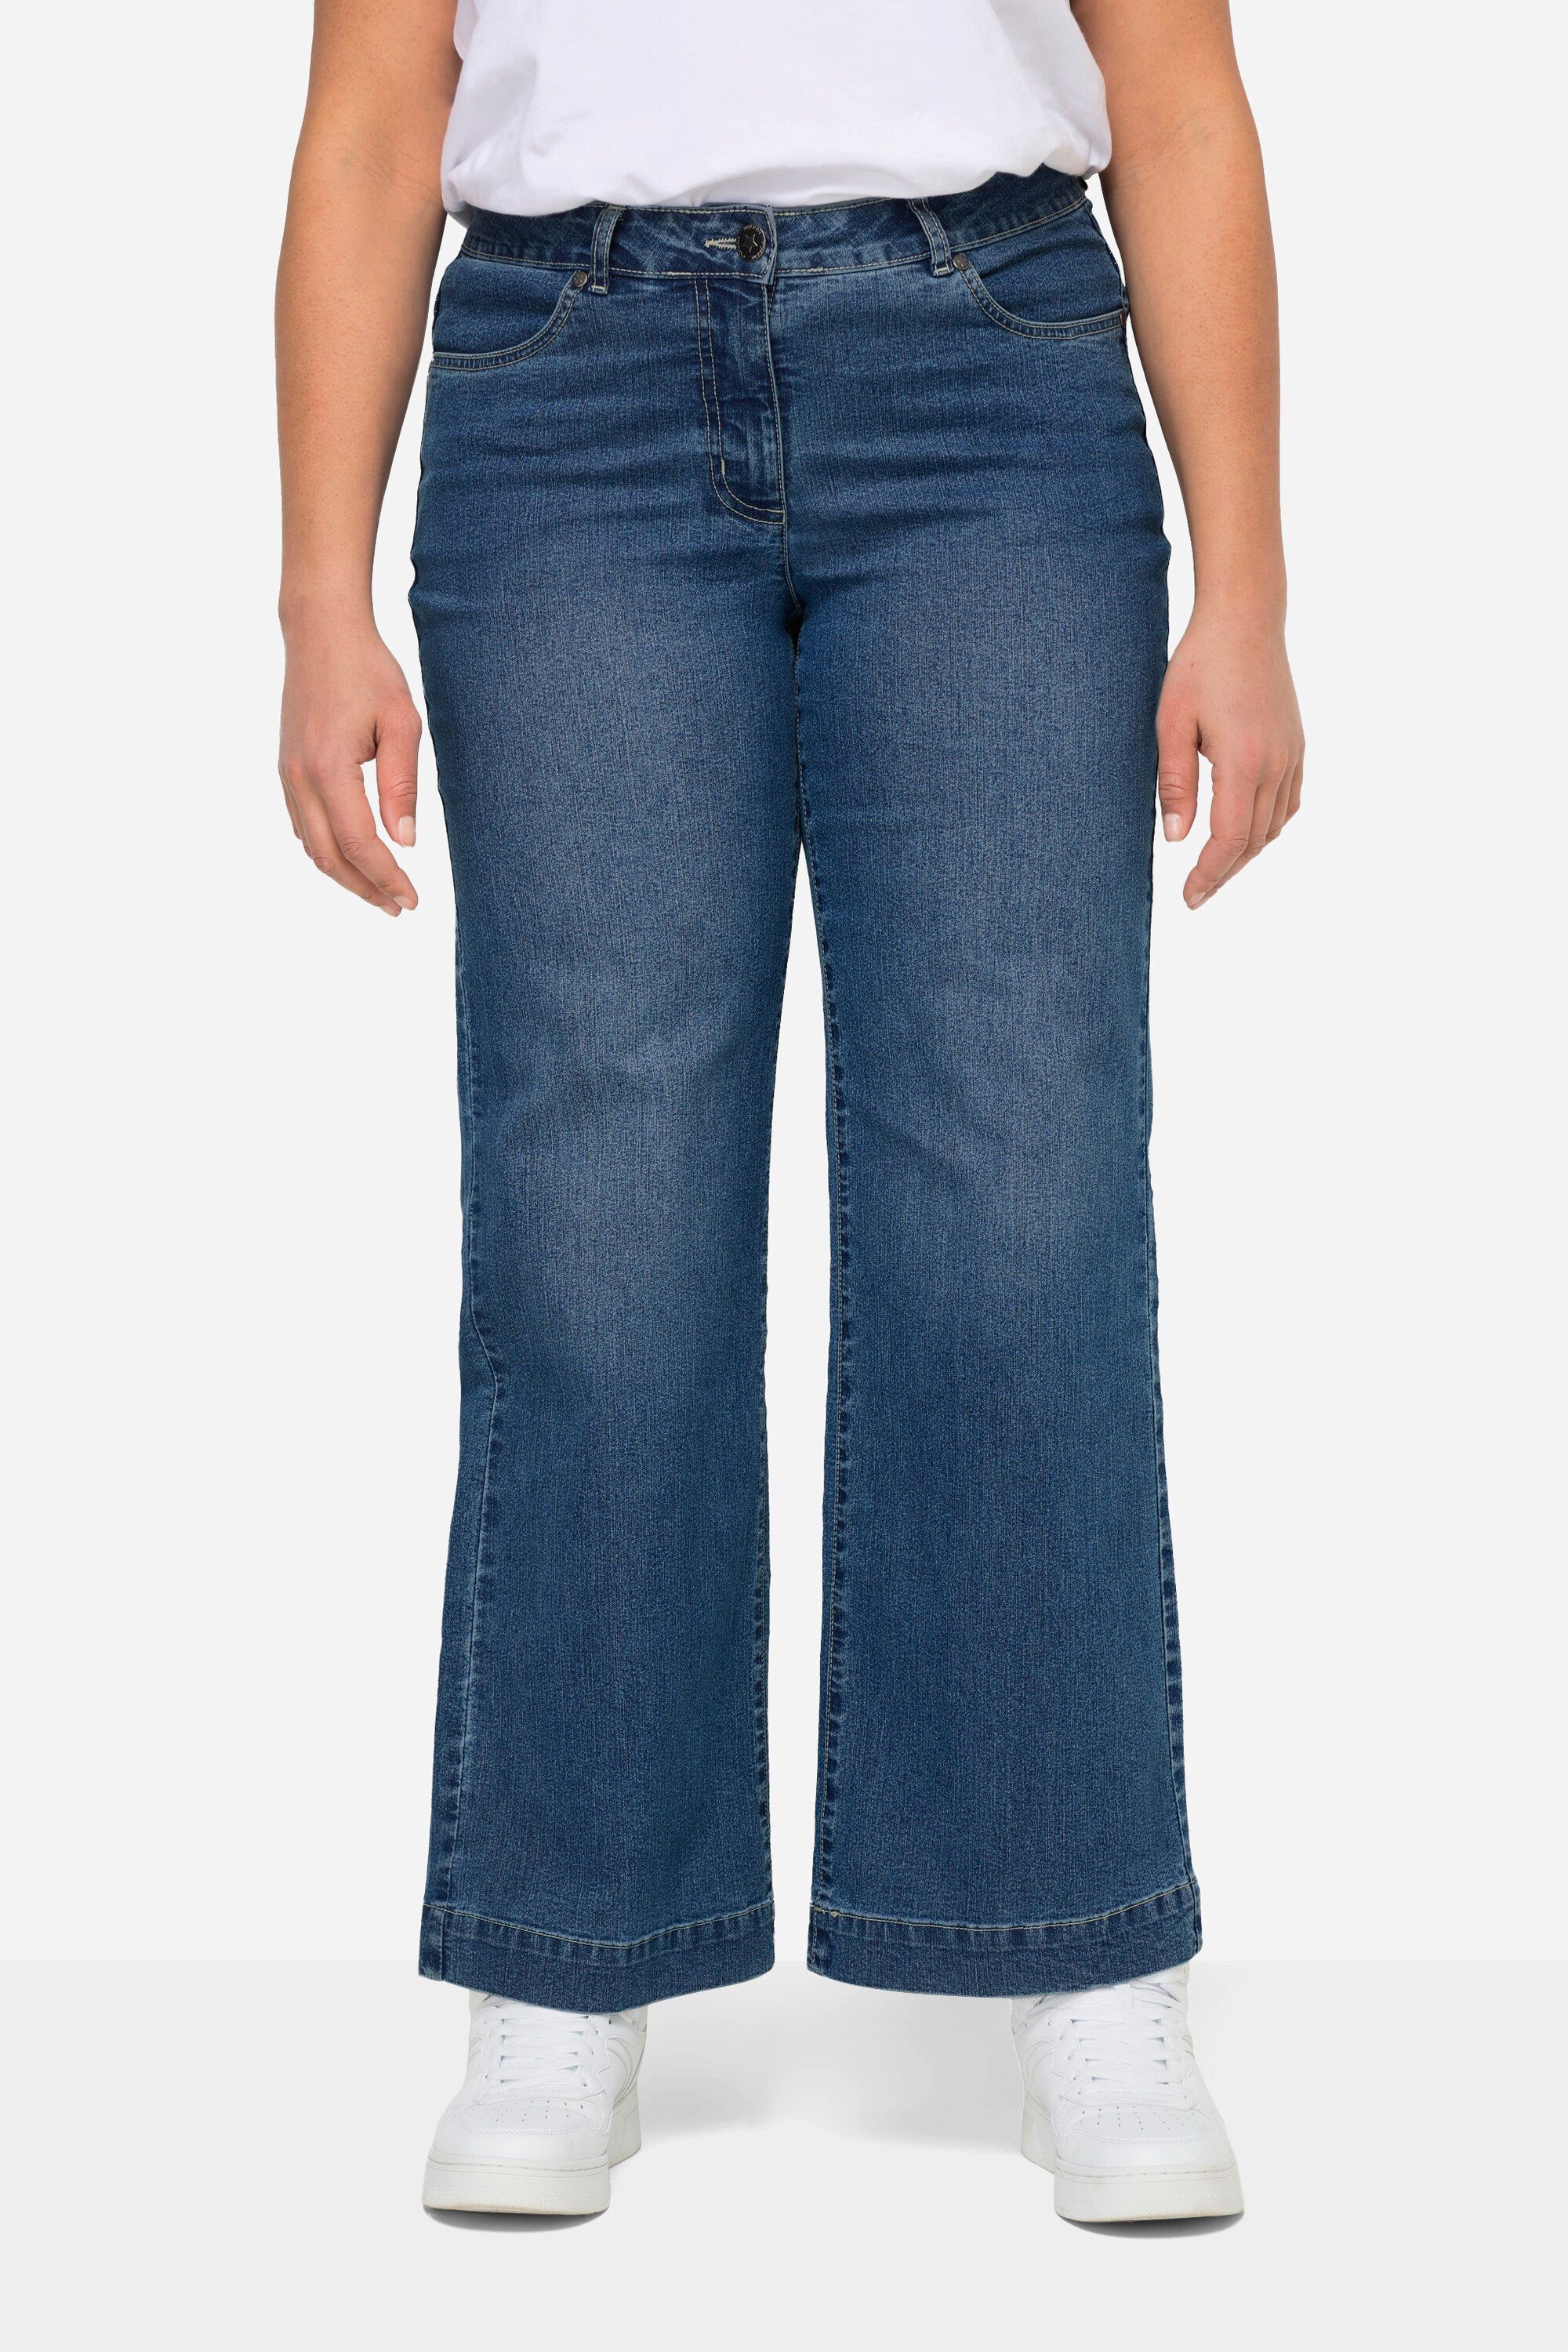 Angel of Style 5-Pocket-Jeans Jeans Nora weit und gerade Stretchkomfort 4-Pocket